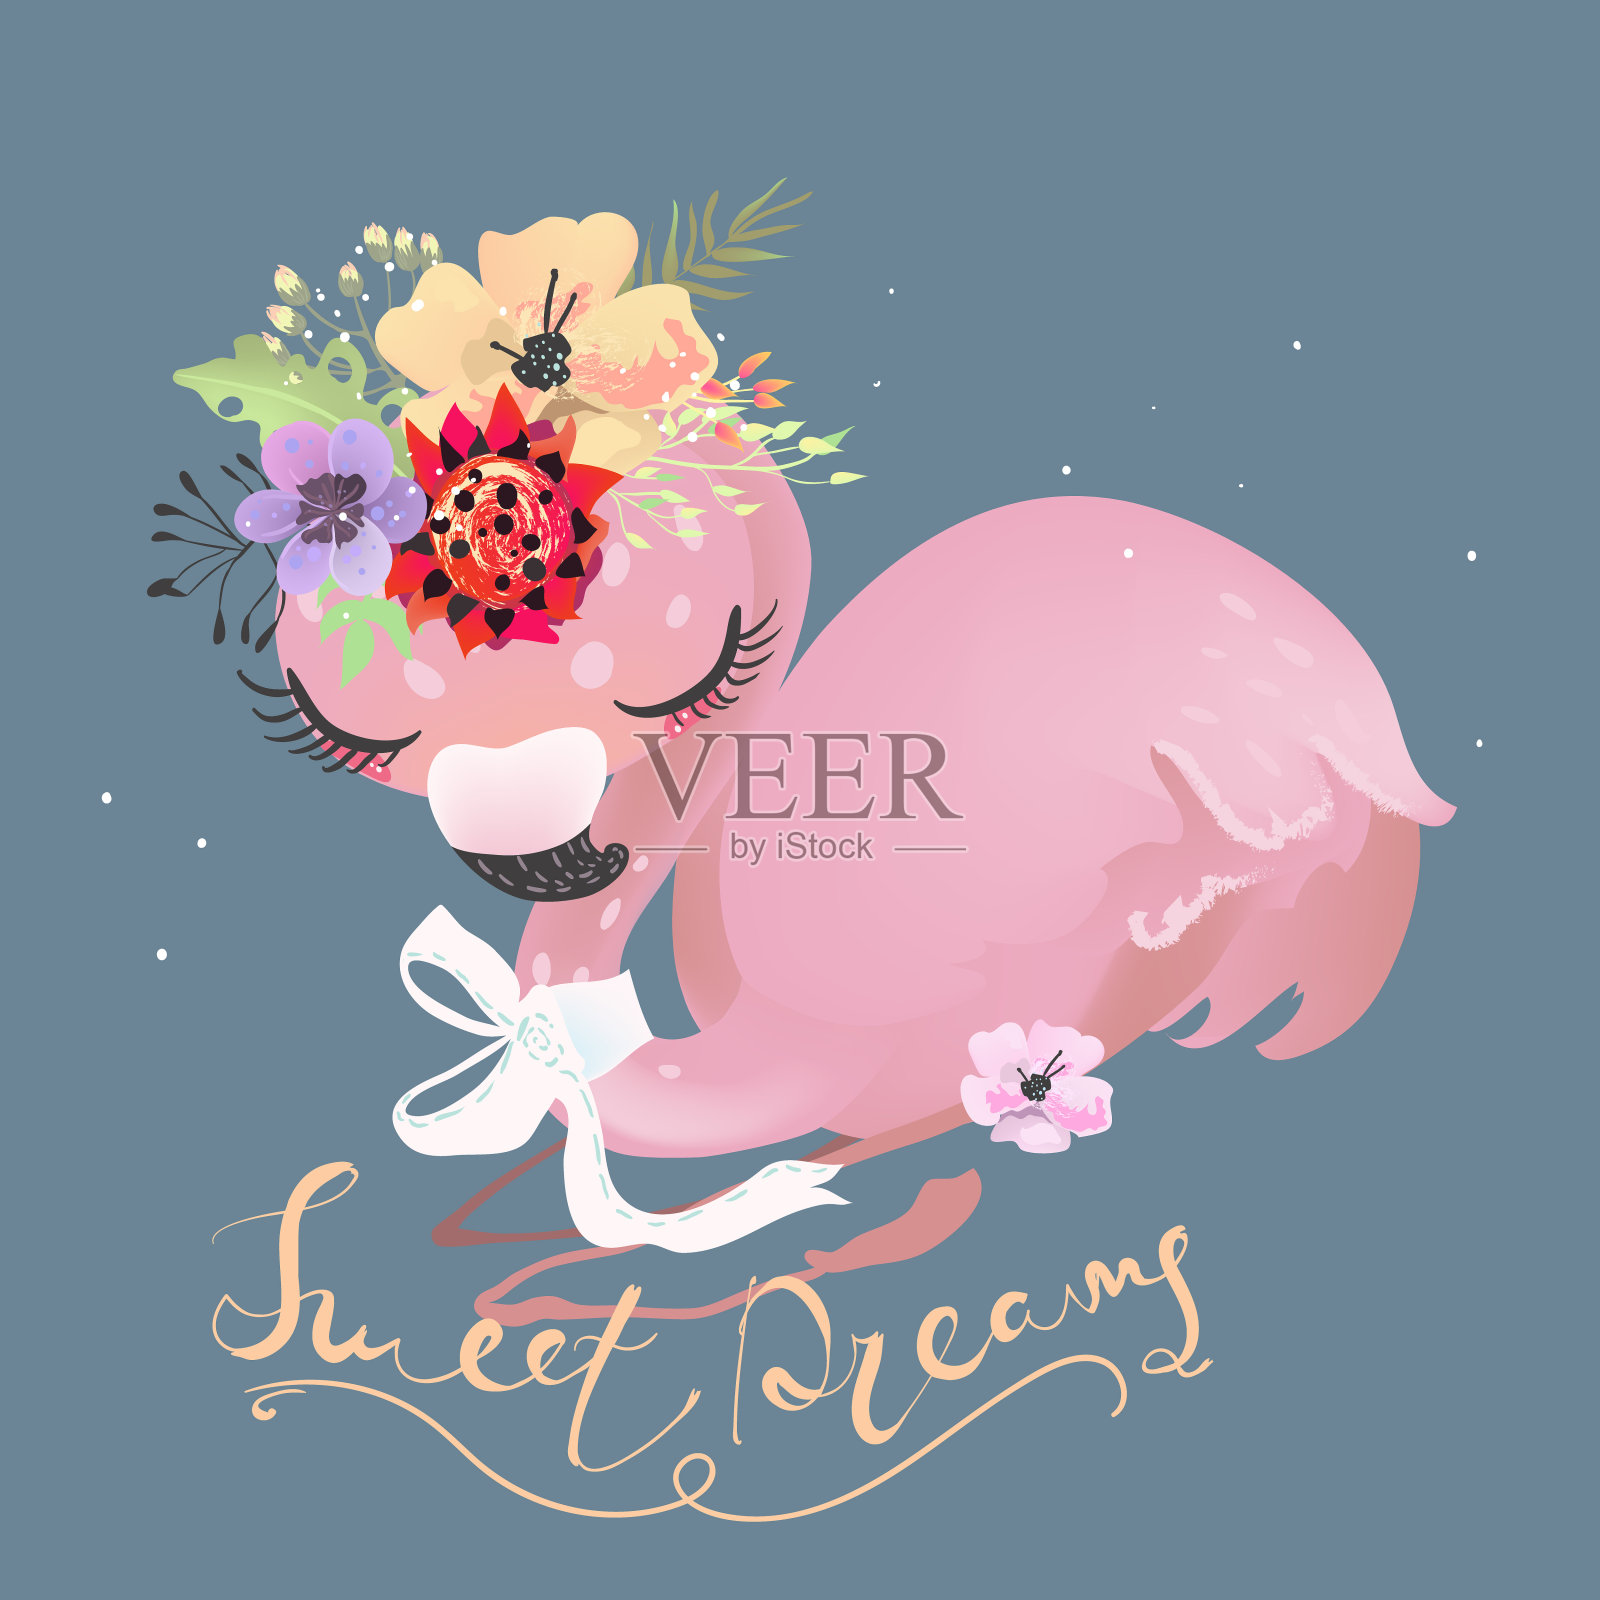 可爱的梦想火烈鸟粉红色的婴儿公主异国情调的鸟系蝴蝶结和热带花朵插画图片素材